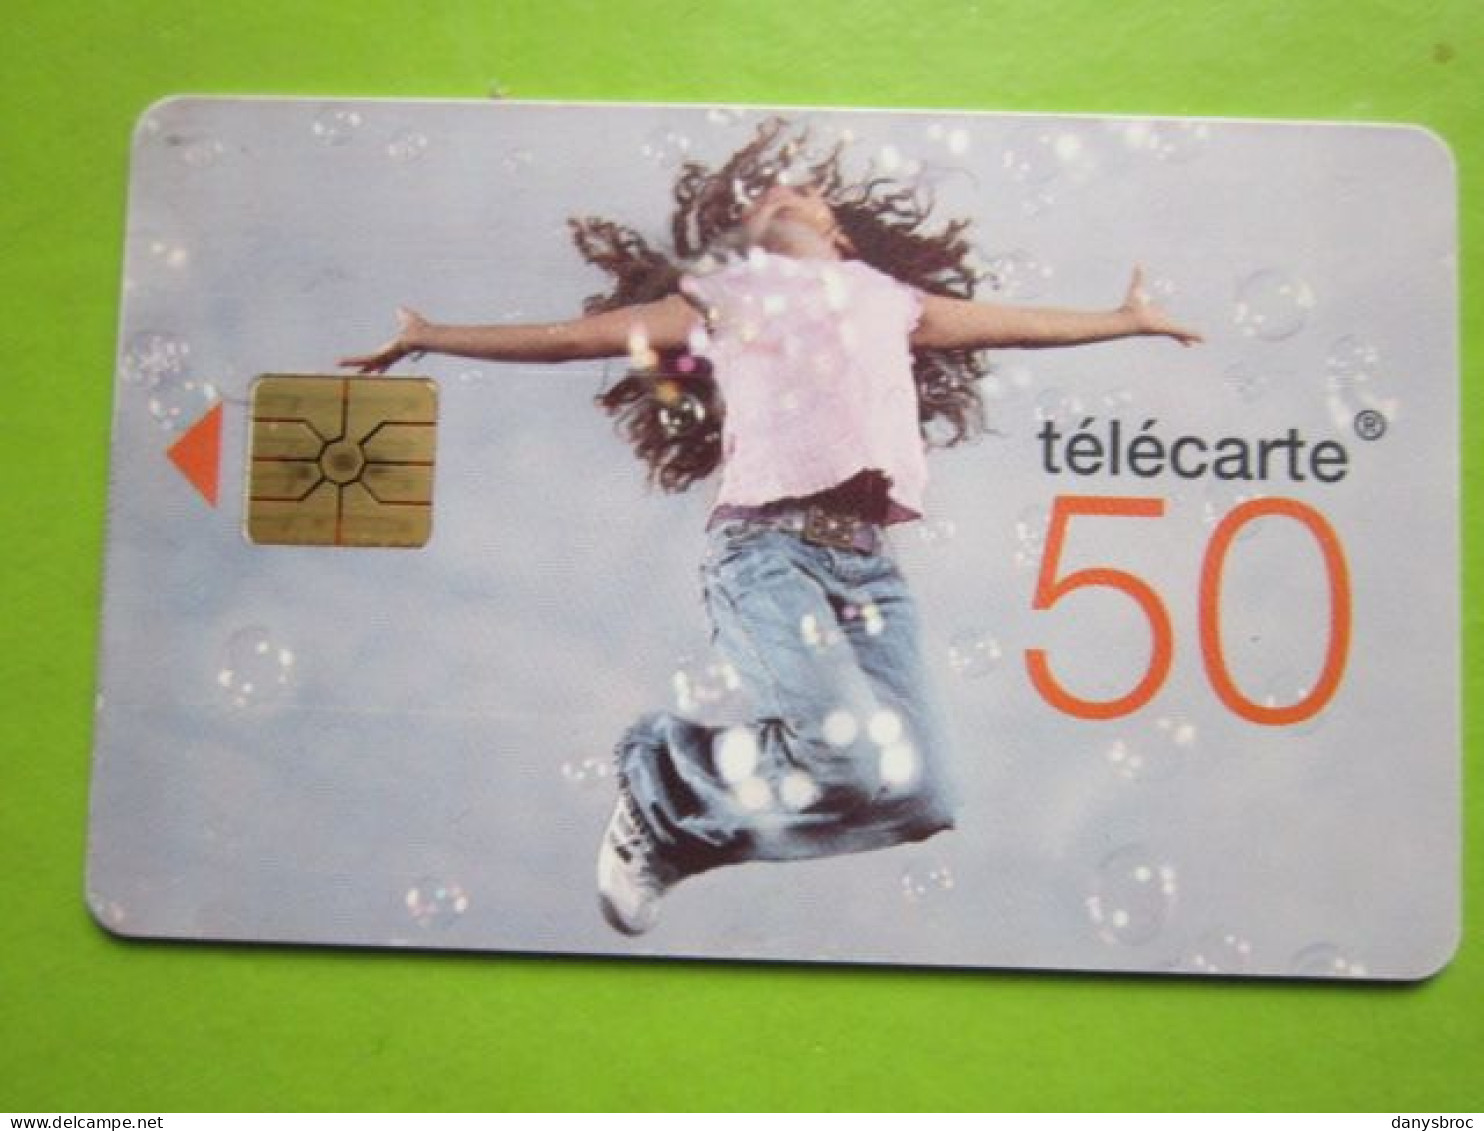 1/06/2010 - Télécarte 50 - 150000 CABINES - Telephones